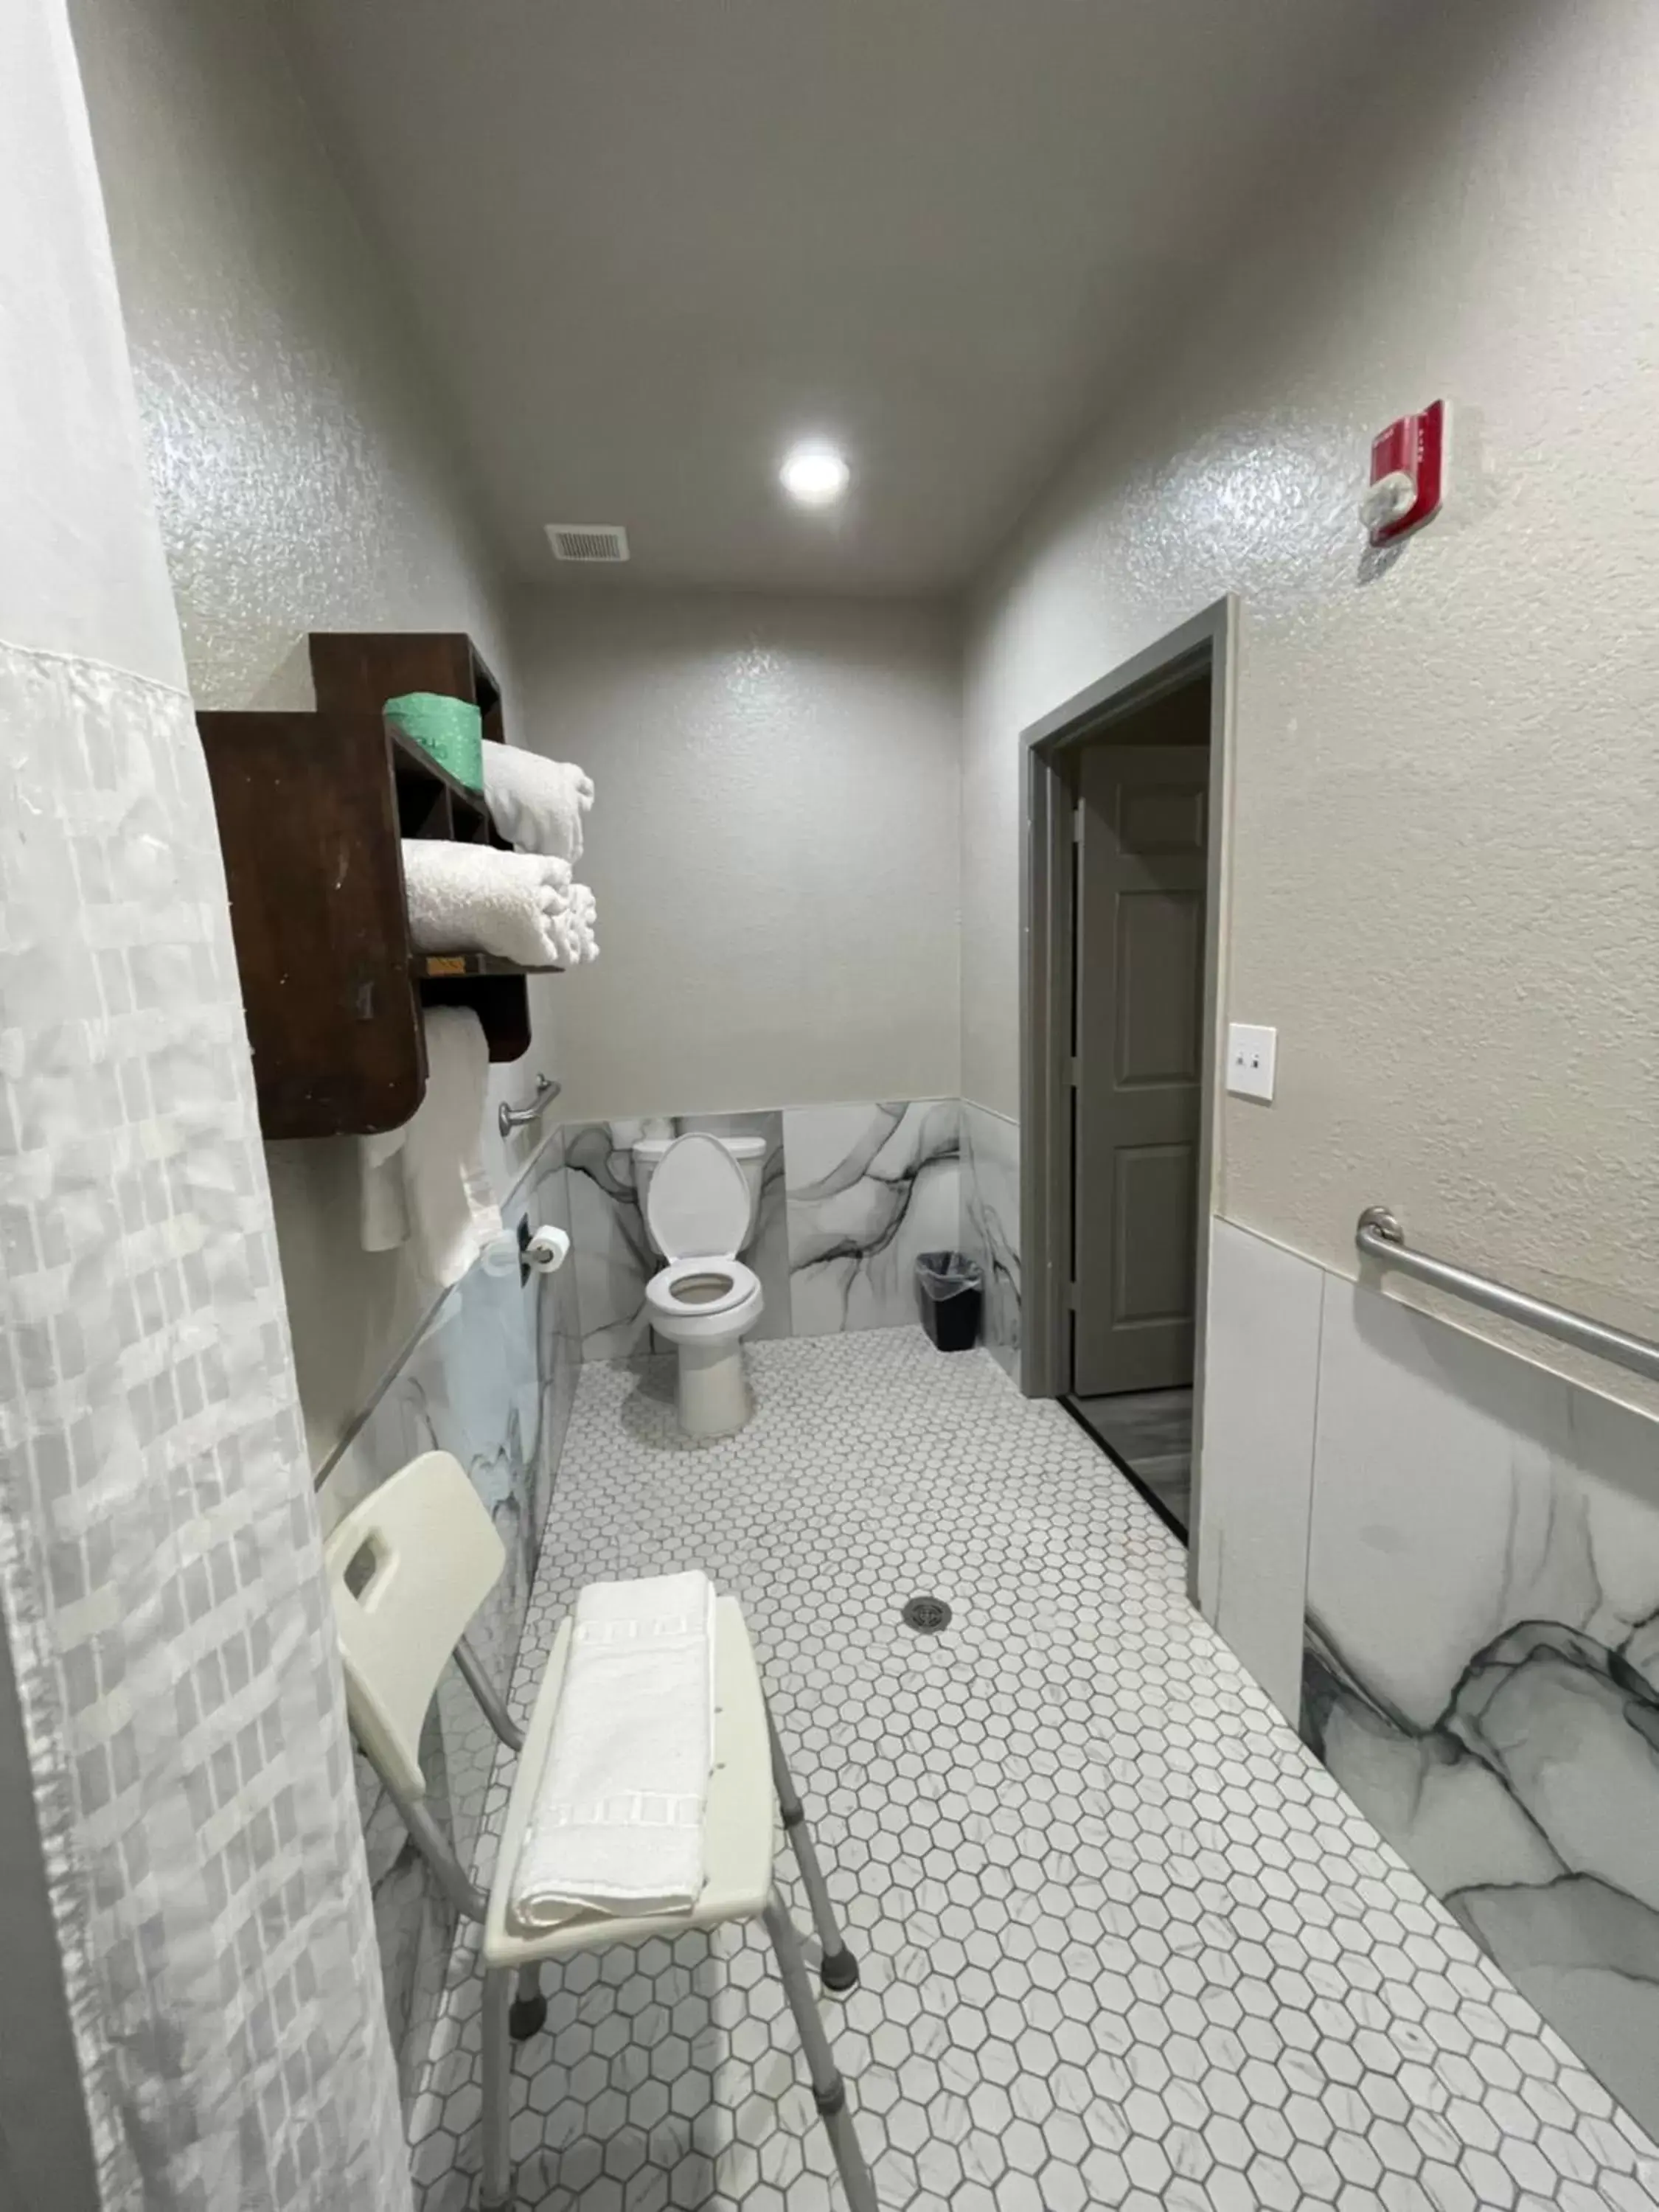 Bathroom in Days Inn by Wyndham Dickinson TX